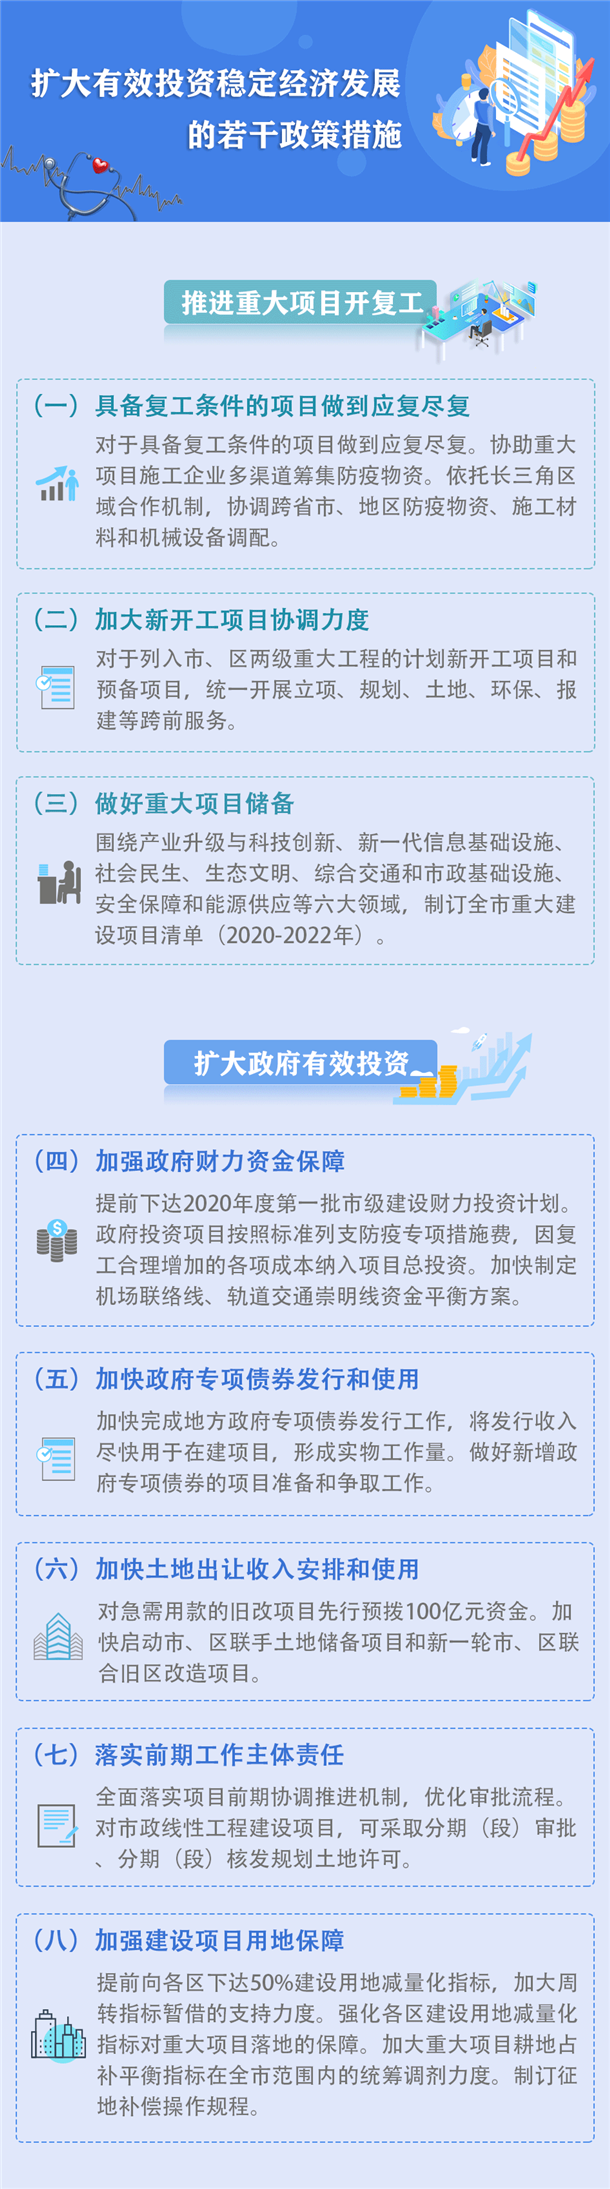 图解《上海市扩大有效投资稳定经济发展的若干政策措施》